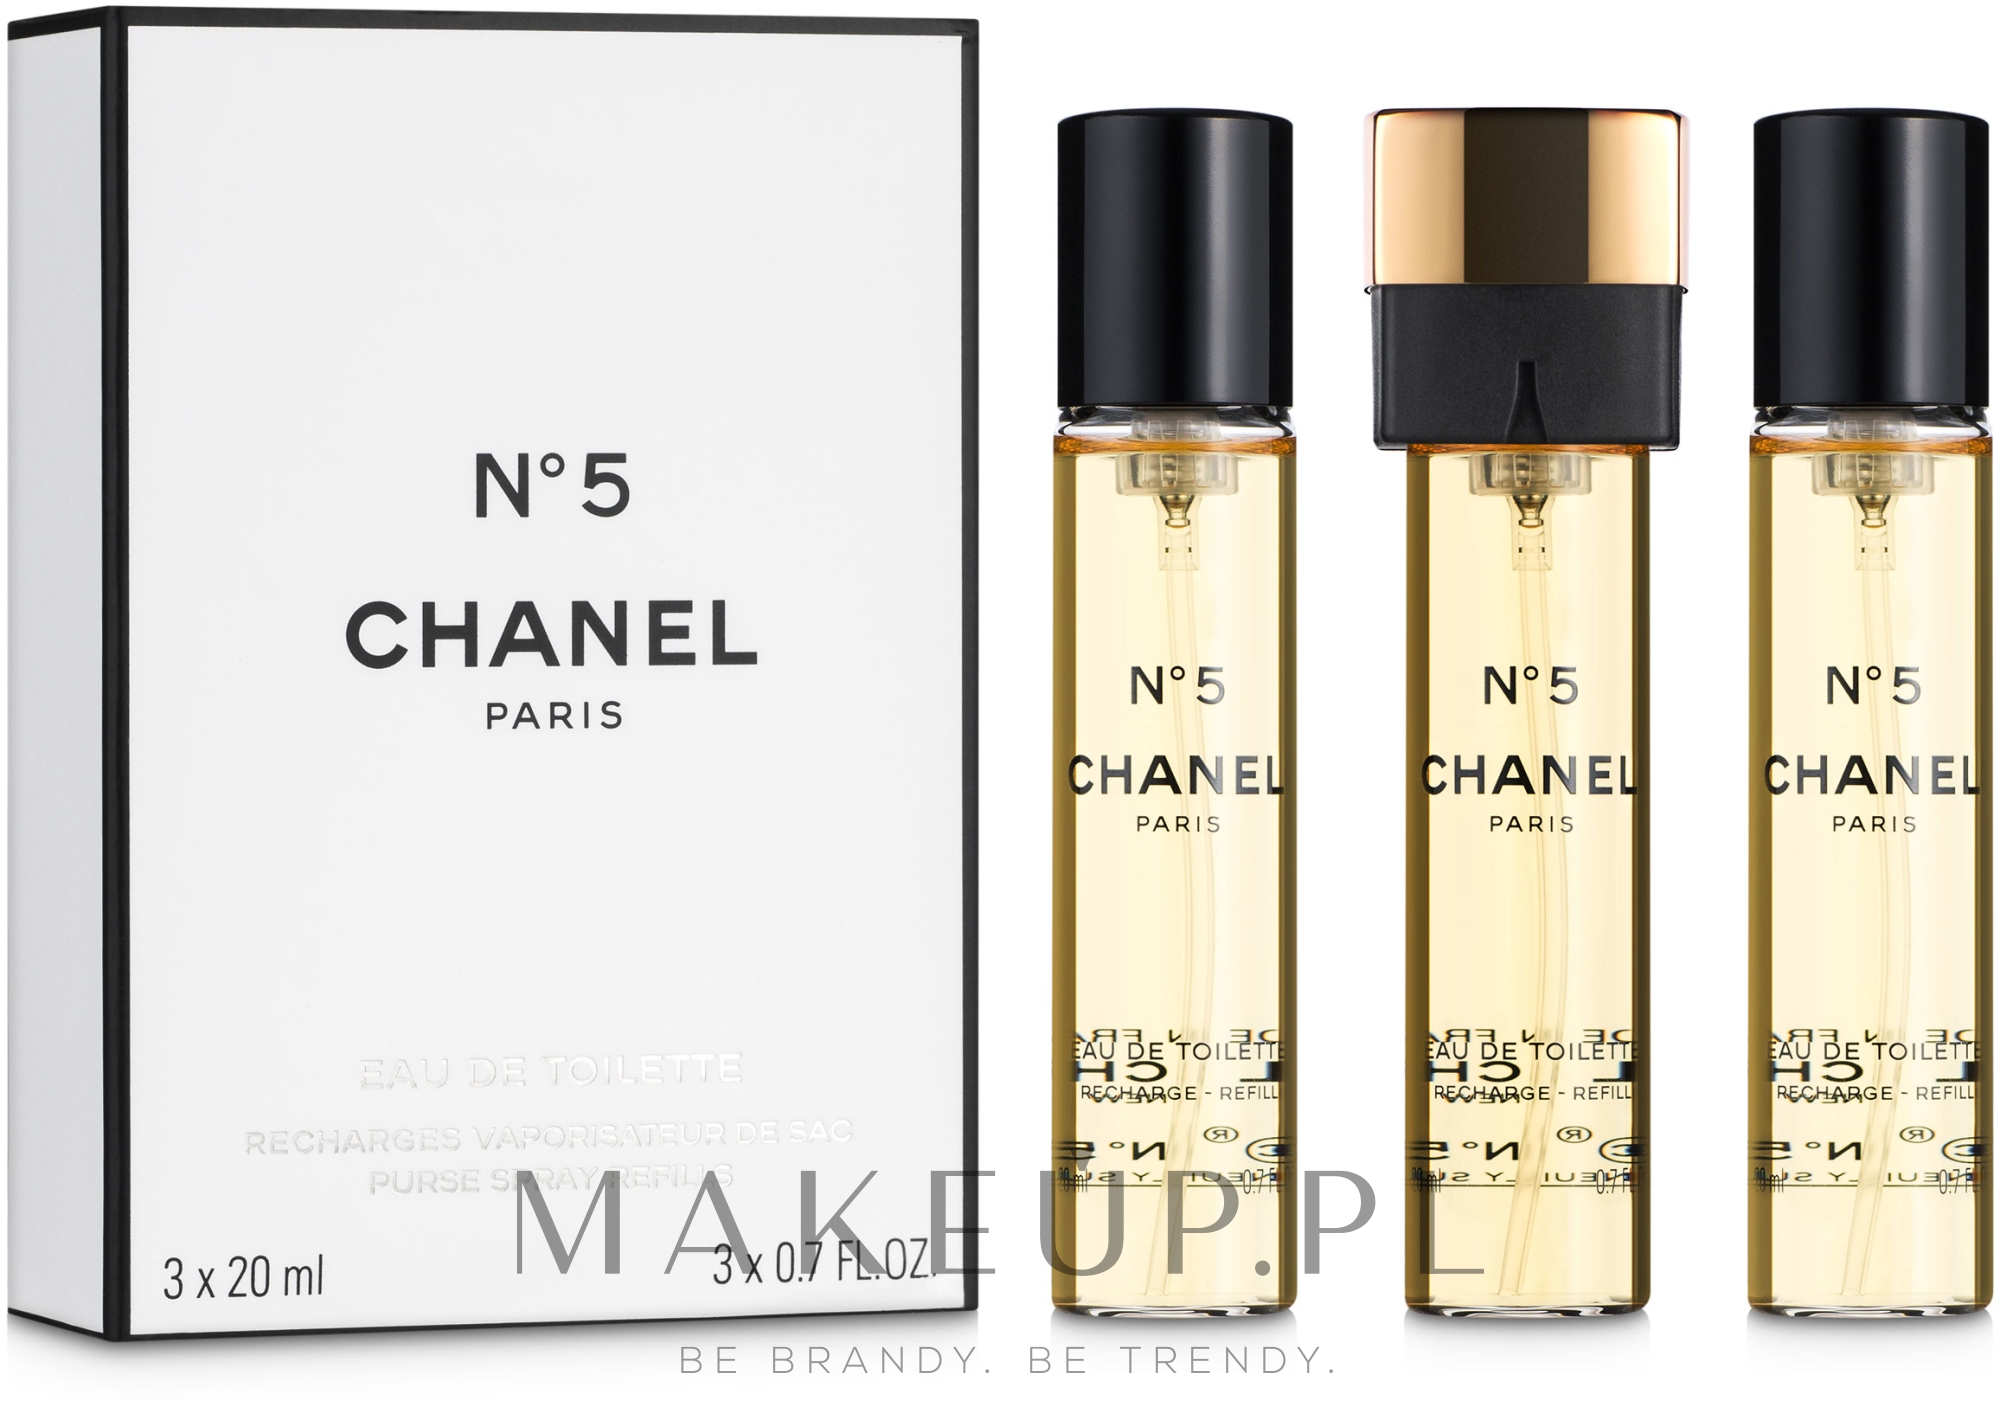 004803 Chanel No 5 Eau de Parfum 100ml. UNBOX 12918481330 